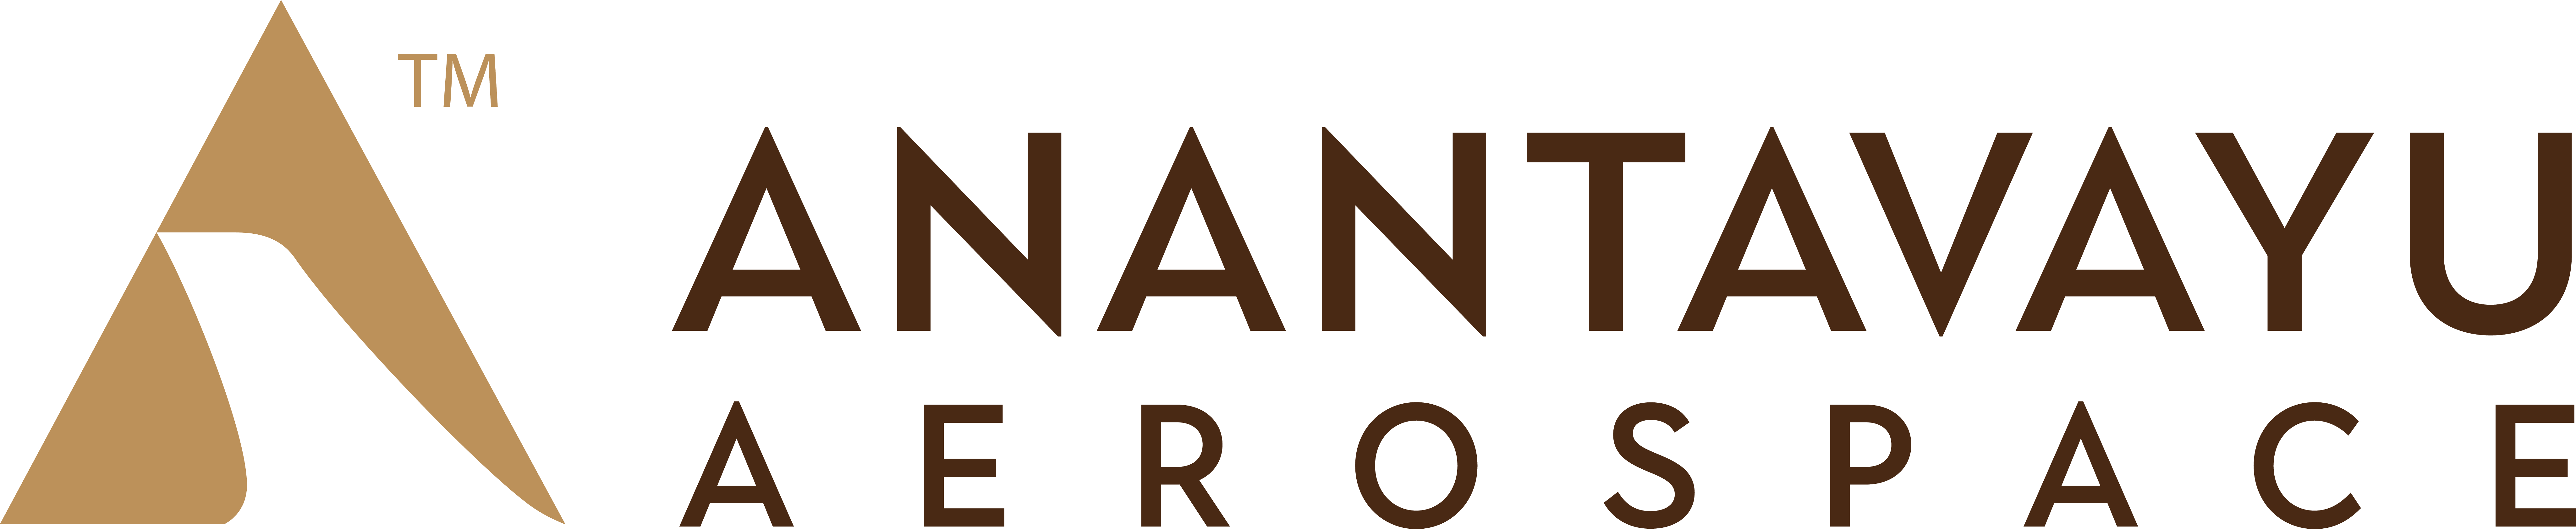 Anantavayu logo